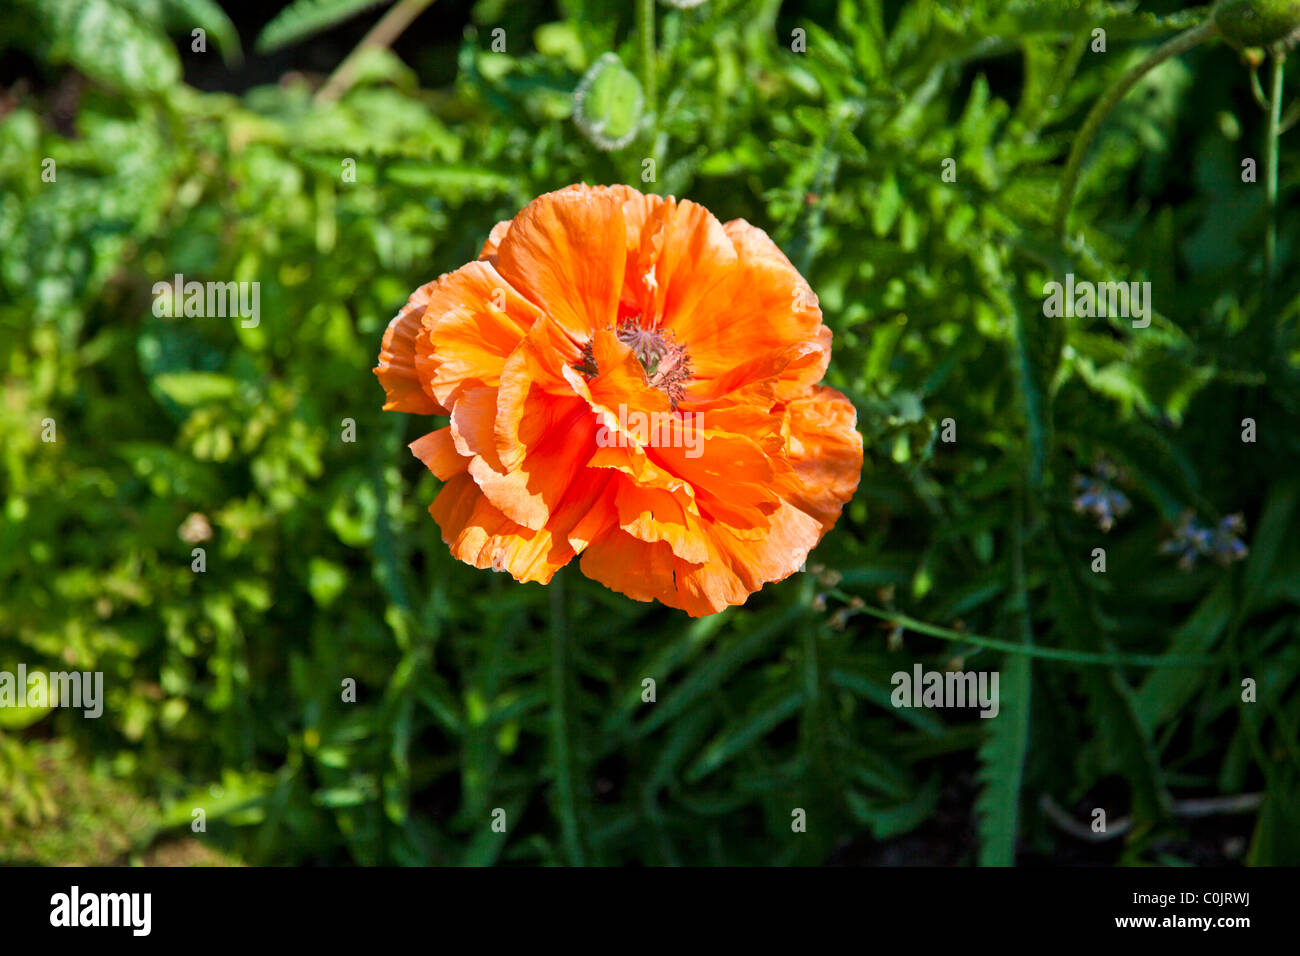 An orange poppy flower in a garden in summer Stock Photo